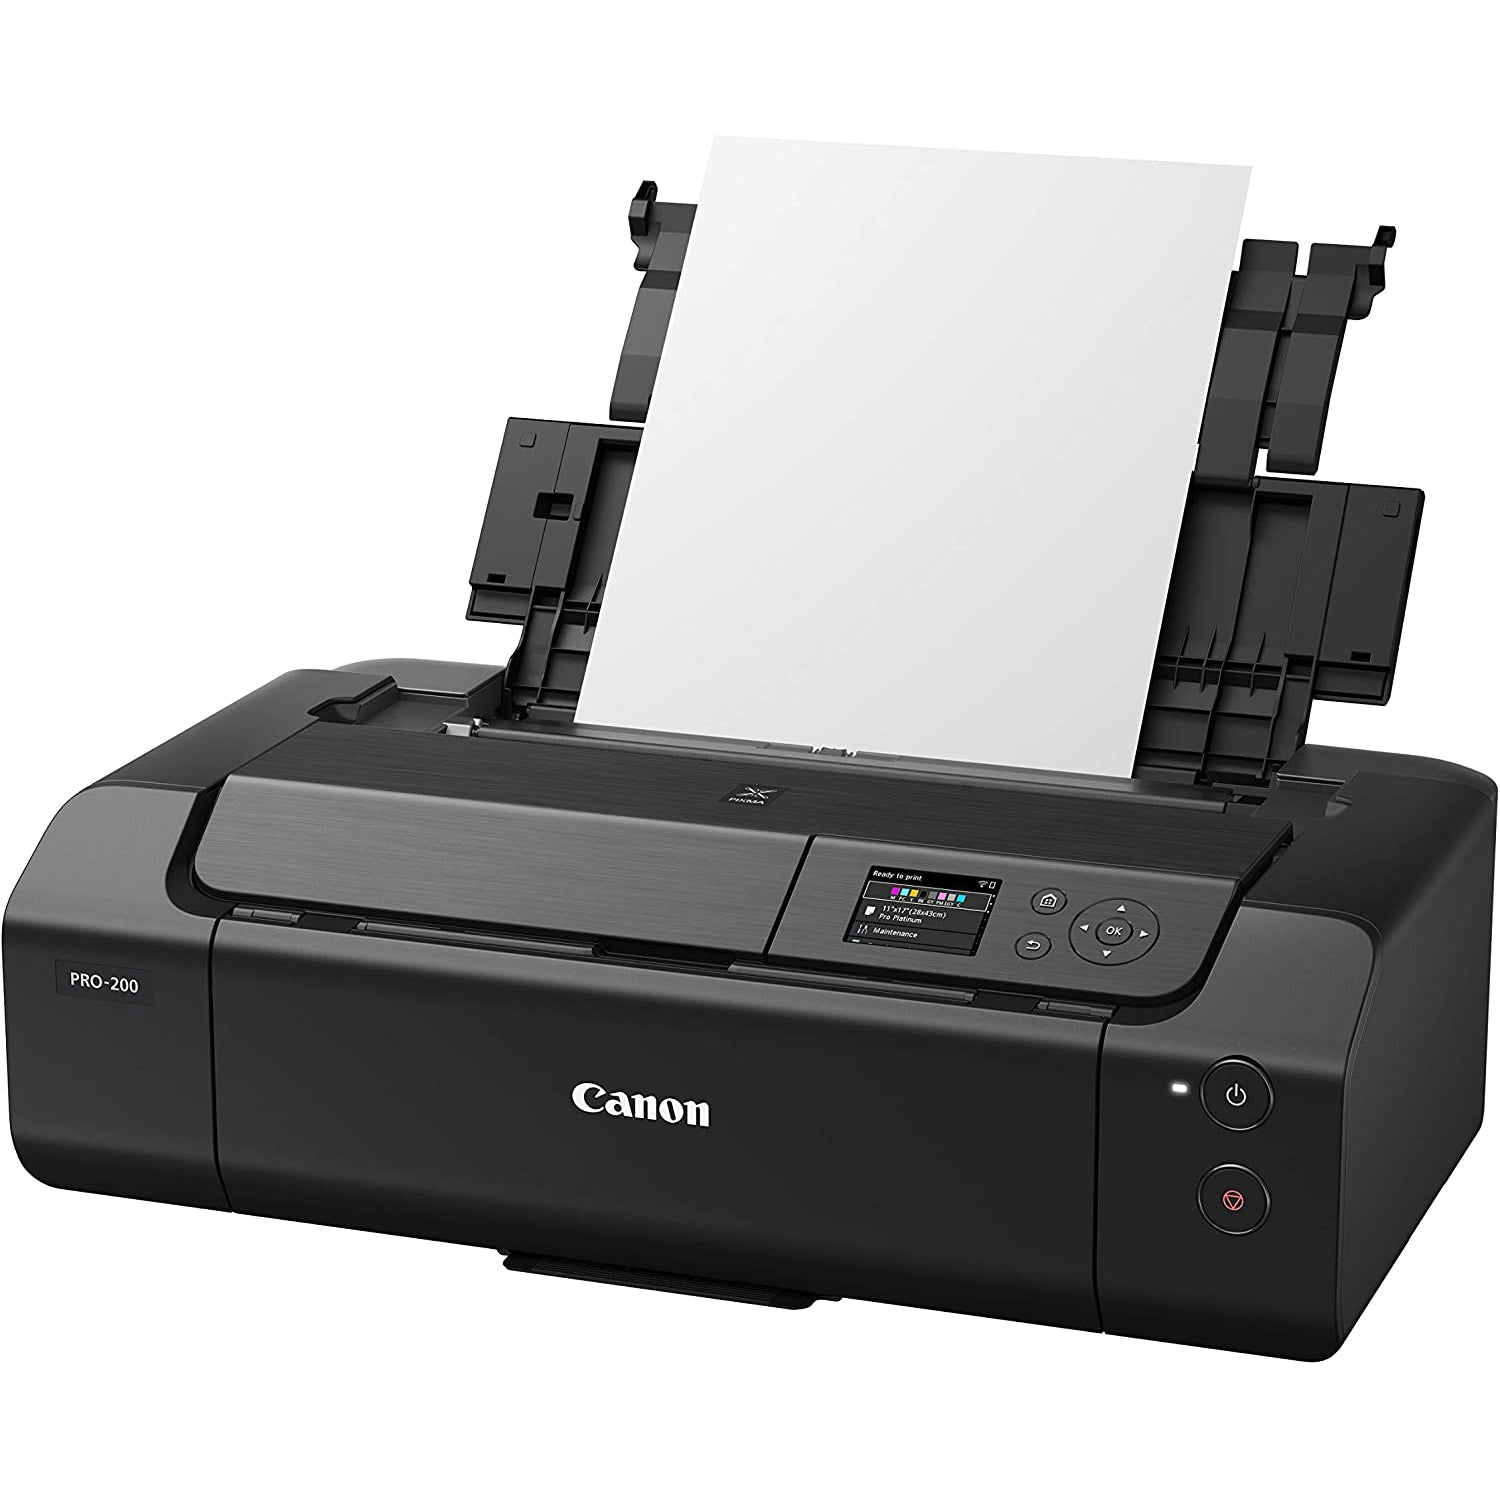 Canon Pixma PRO-200 Colour Inkjet Printer - Black